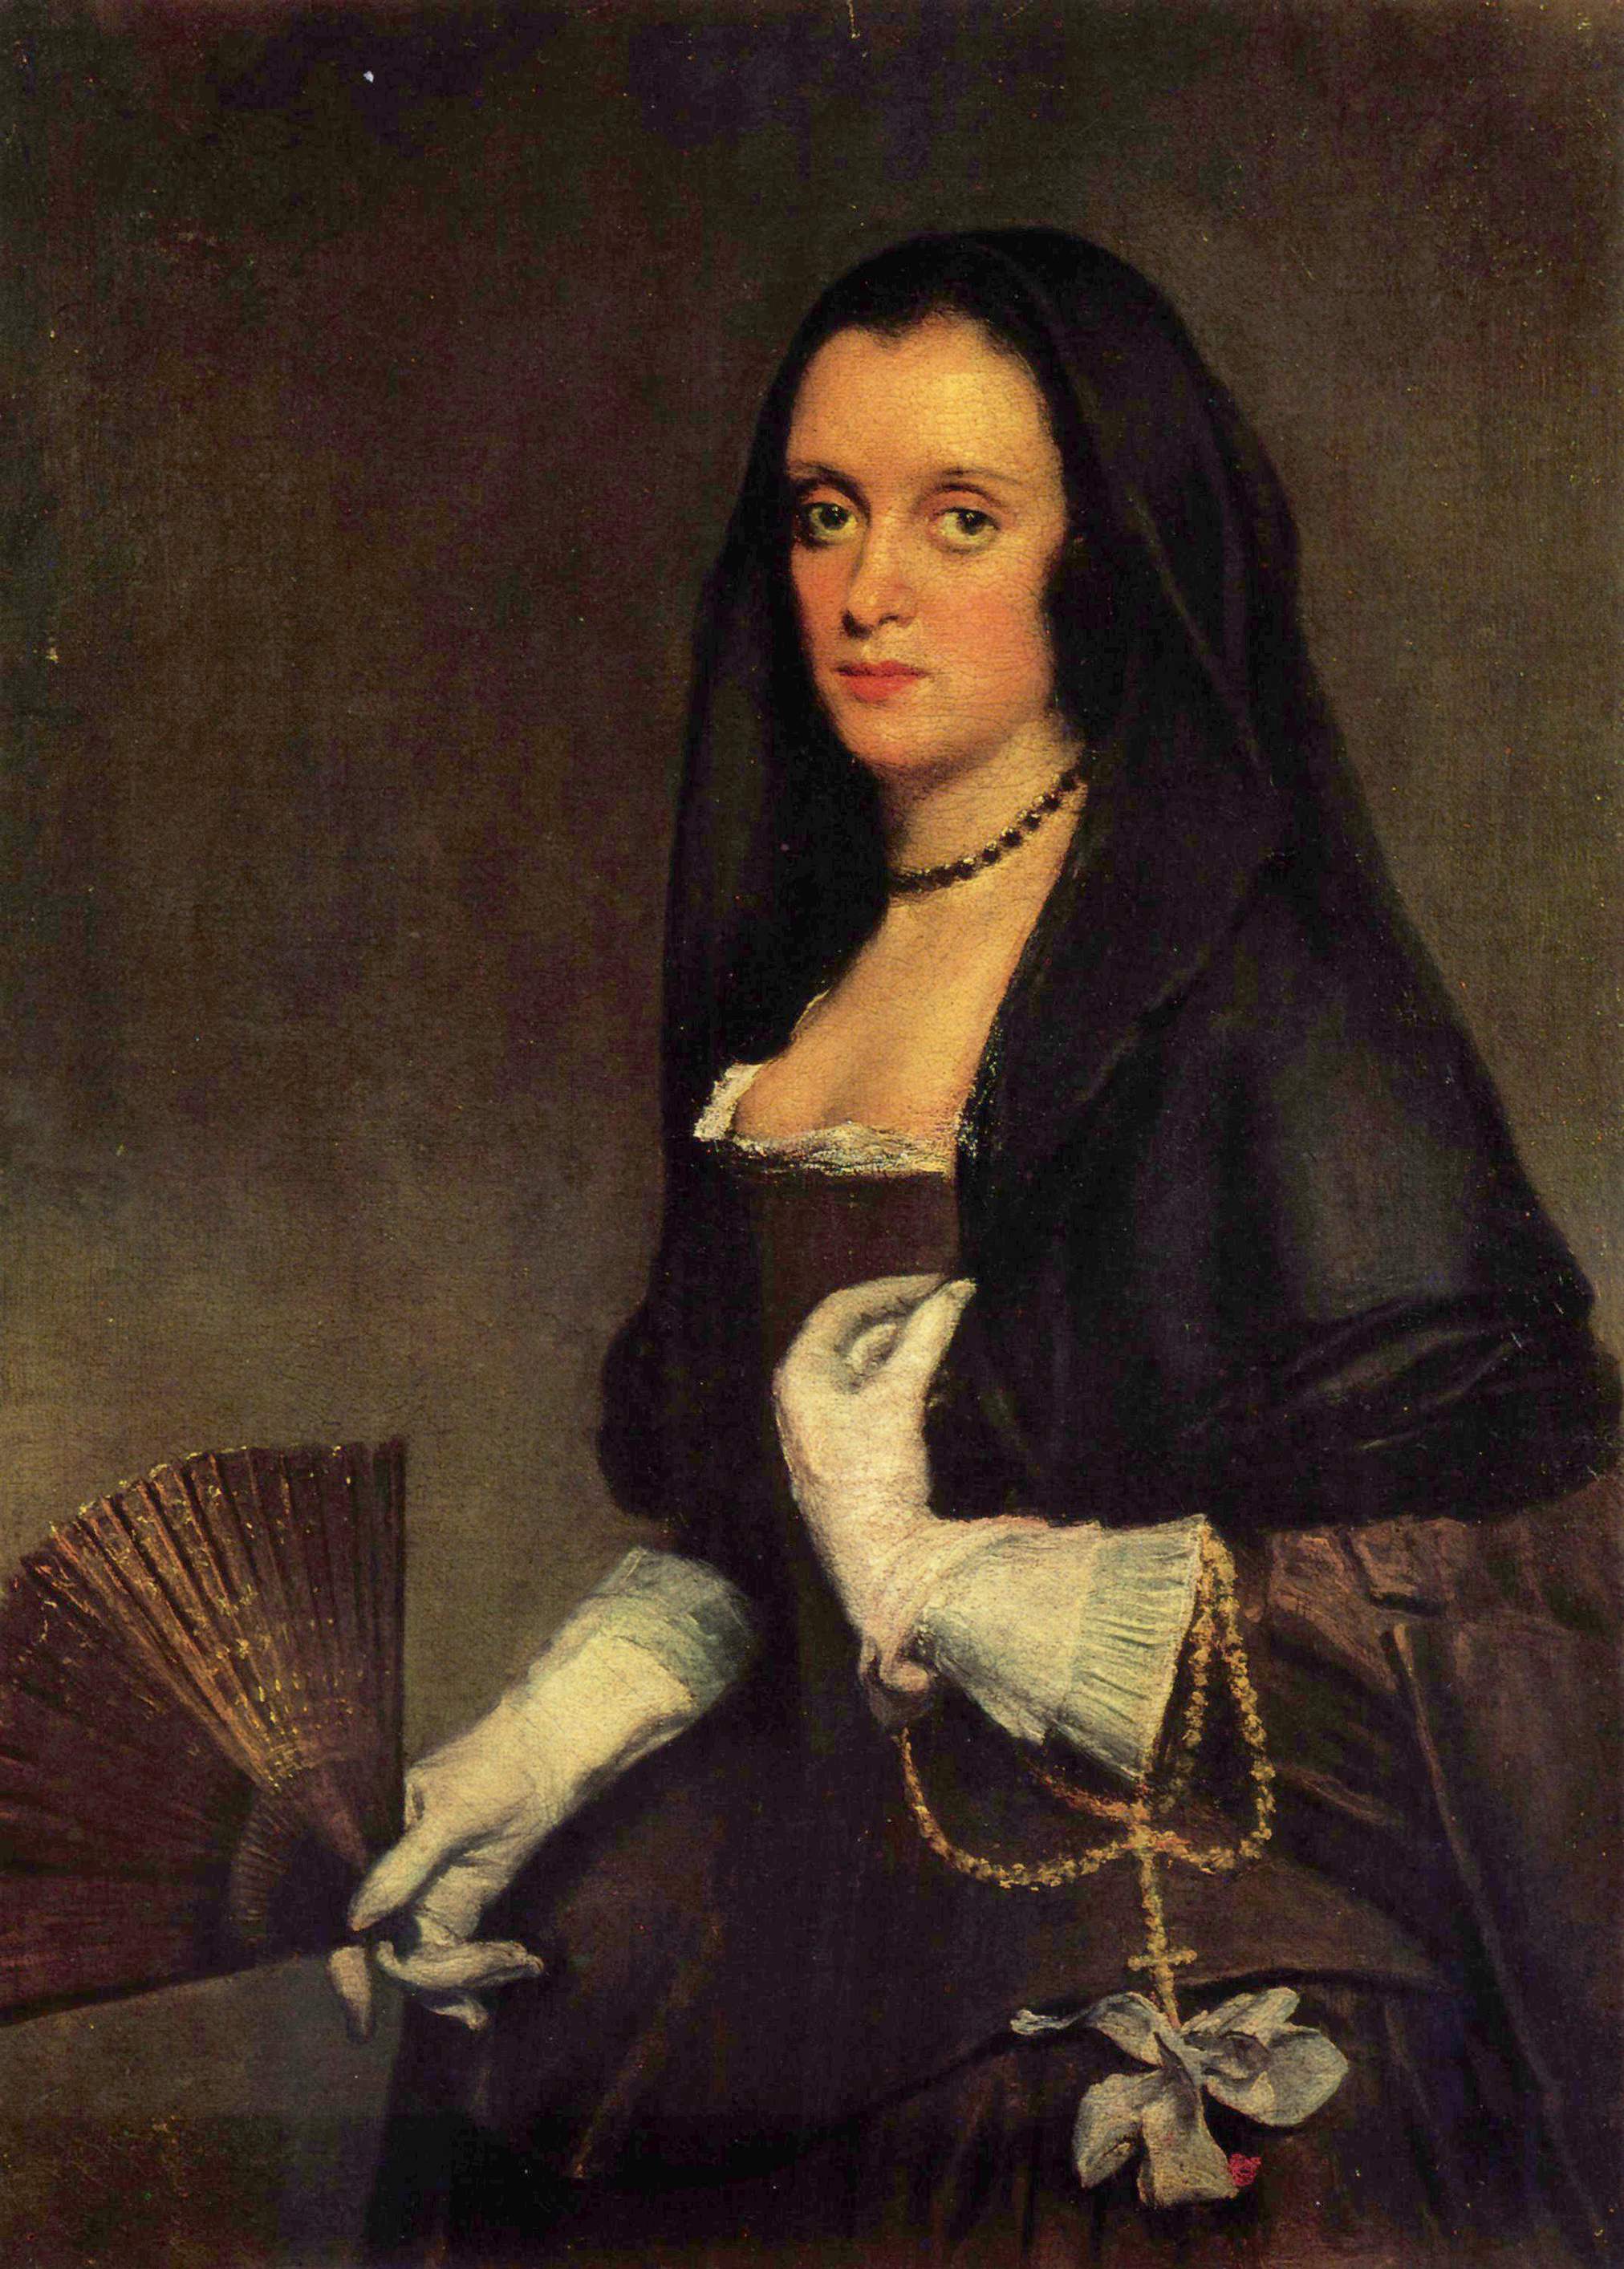 La dama del  abanico by Diego  Velázquez - c. 1640 - 92.8 × 68.5 cm  Colección Wallace